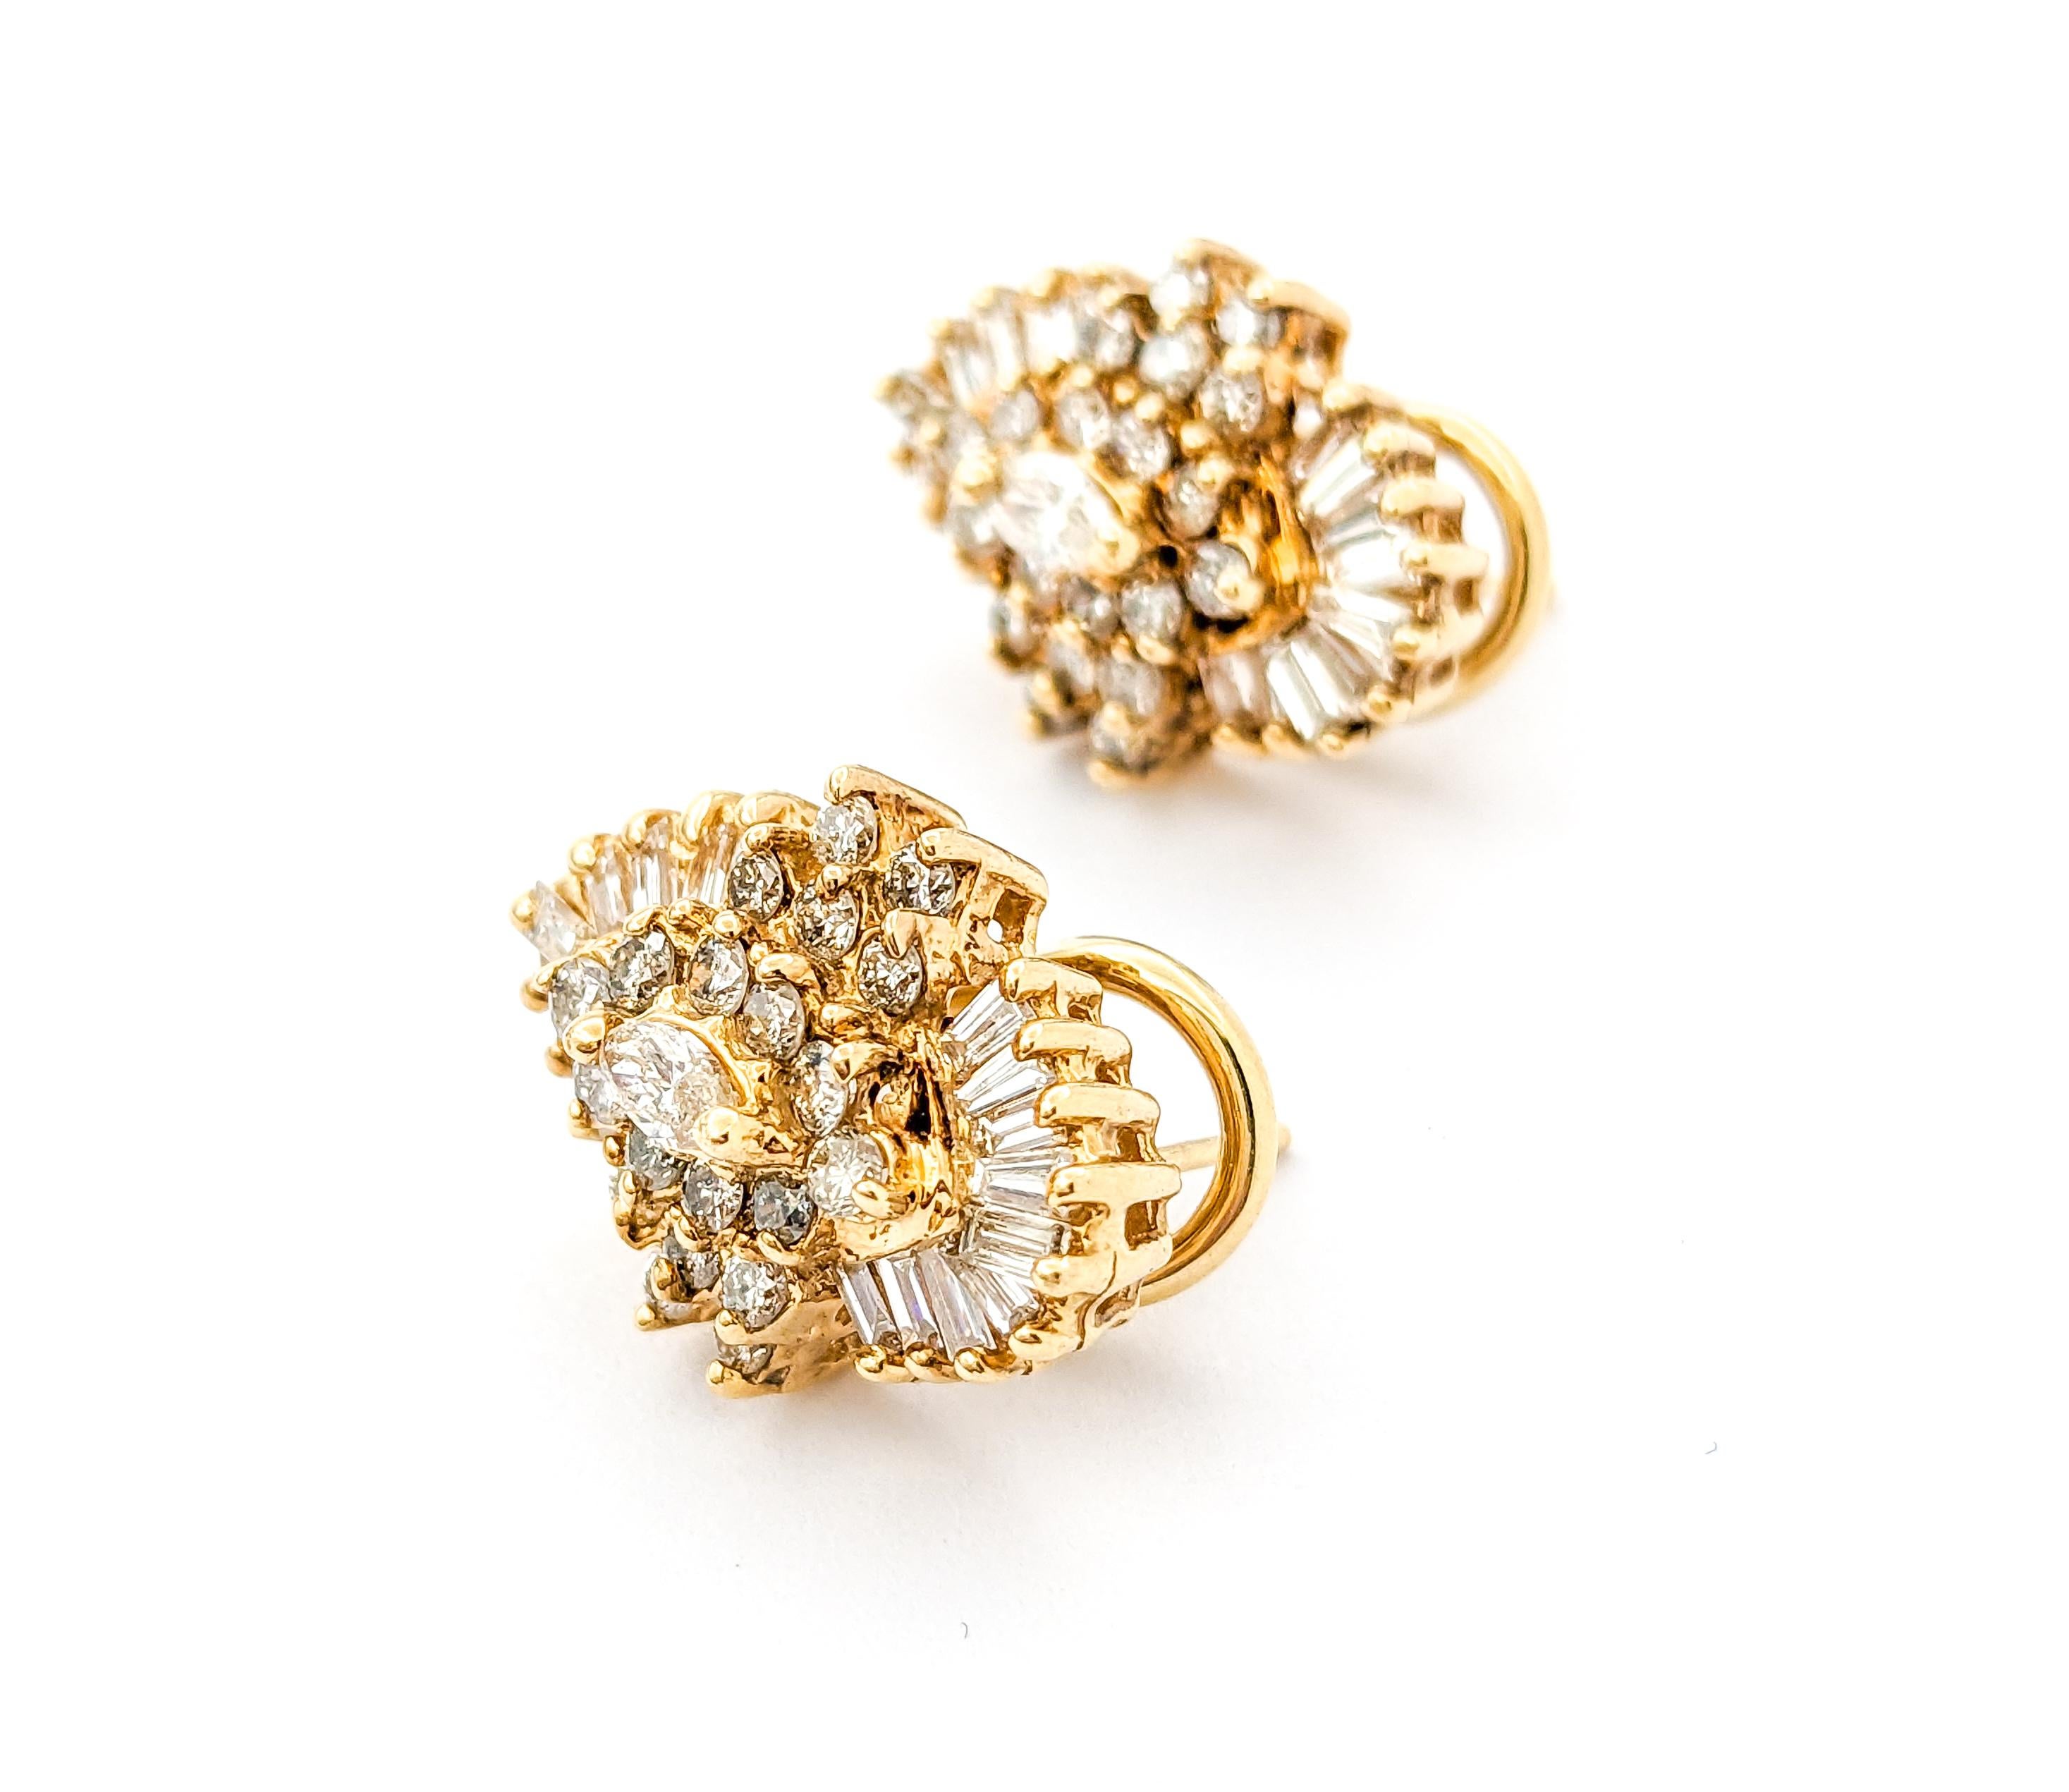 Diamant-Cluster-Ohrringe aus Gelbgold mit Diamanten

Entdecken Sie die Faszination dieser exquisiten Ohrringe, die sorgfältig aus 14-karätigem Gelbgold gefertigt sind. Die atemberaubenden Schmuckstücke bestehen aus insgesamt 2,08 Pfund Diamanten im